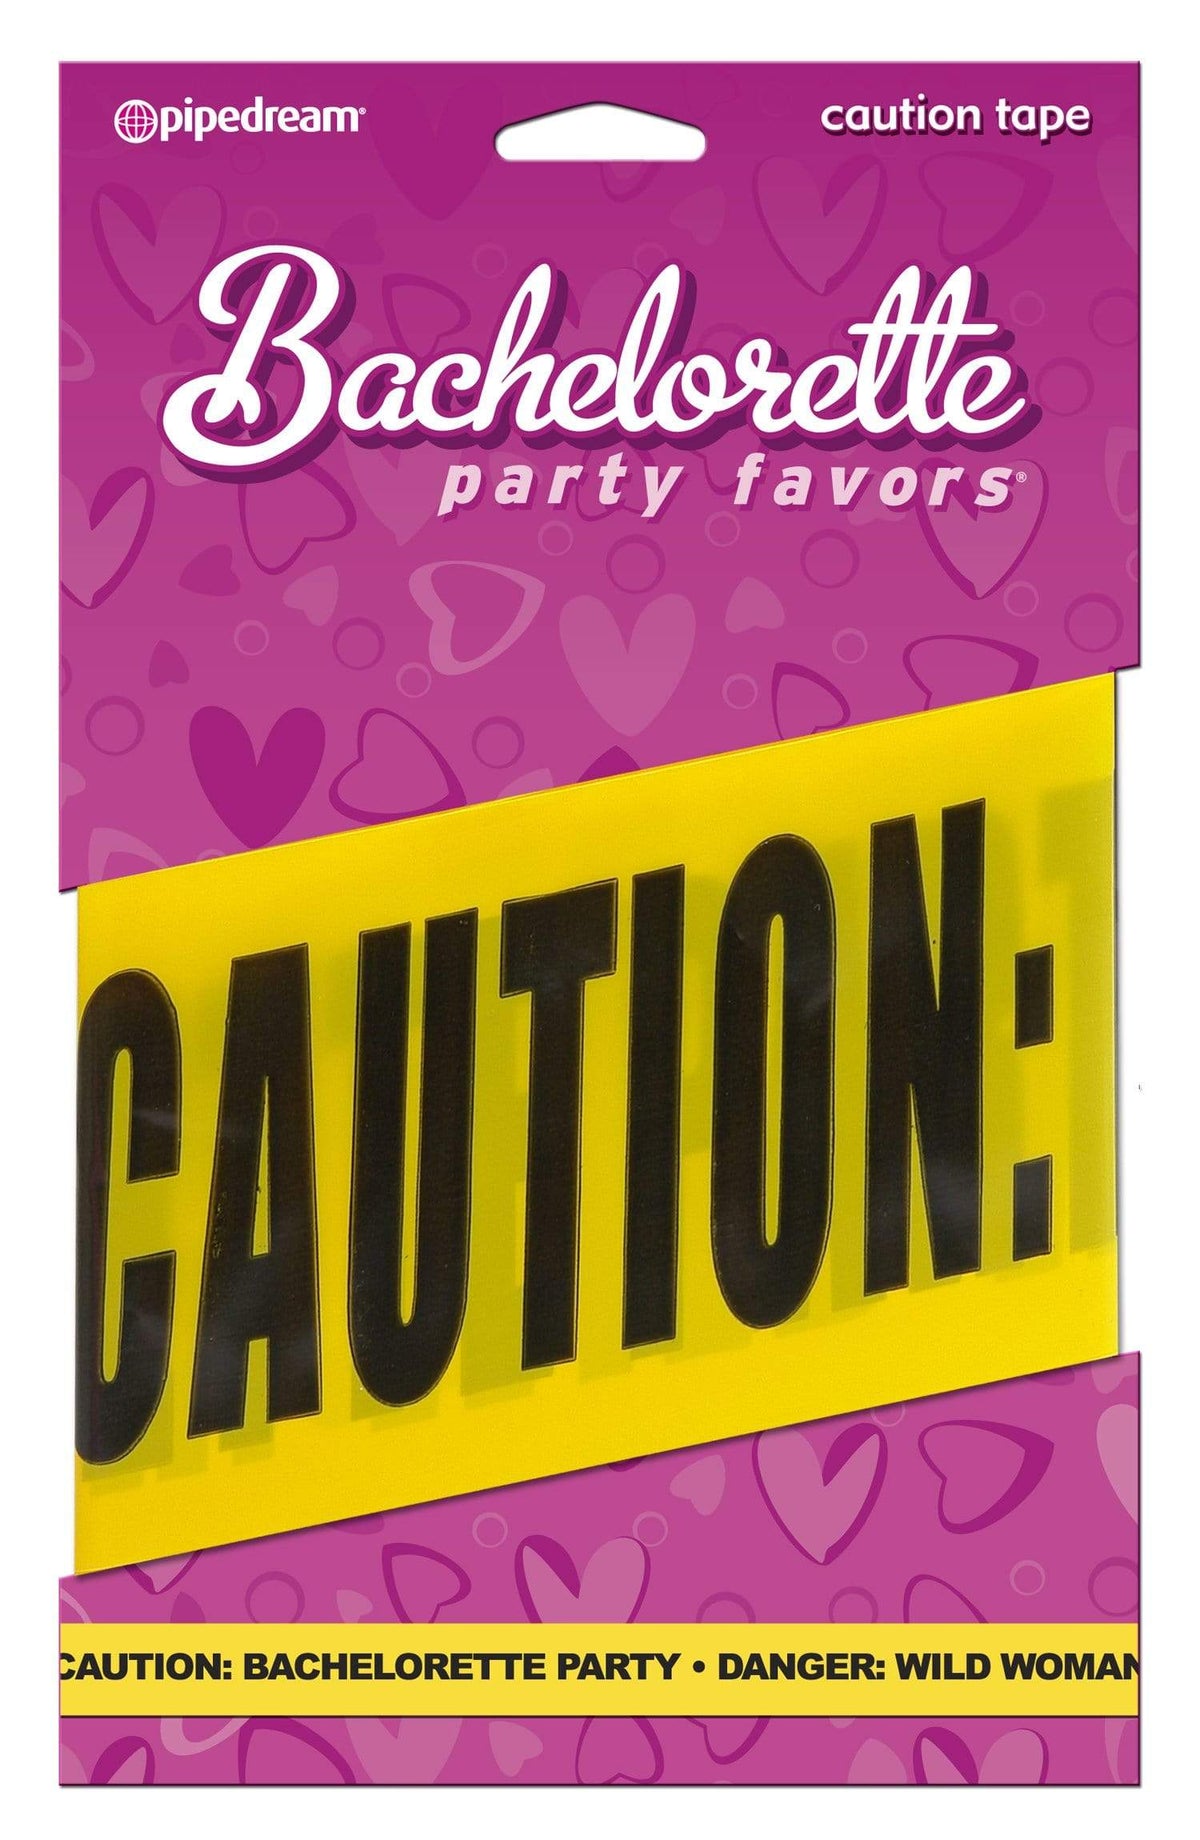 bachelorette party favors caution tape